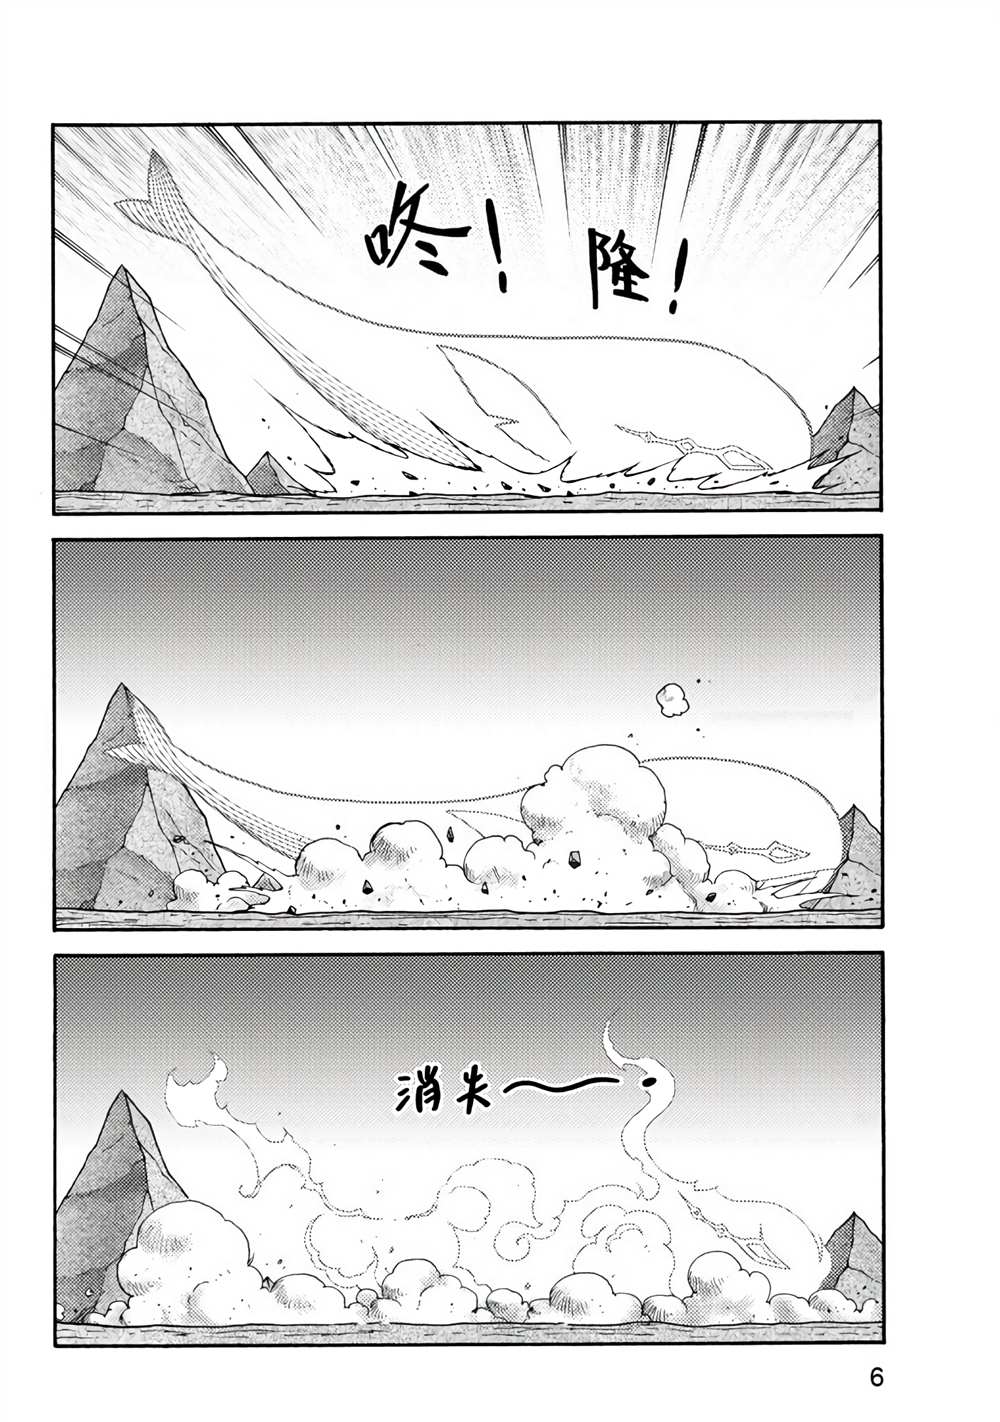 折纸战士A漫画,第2卷1图